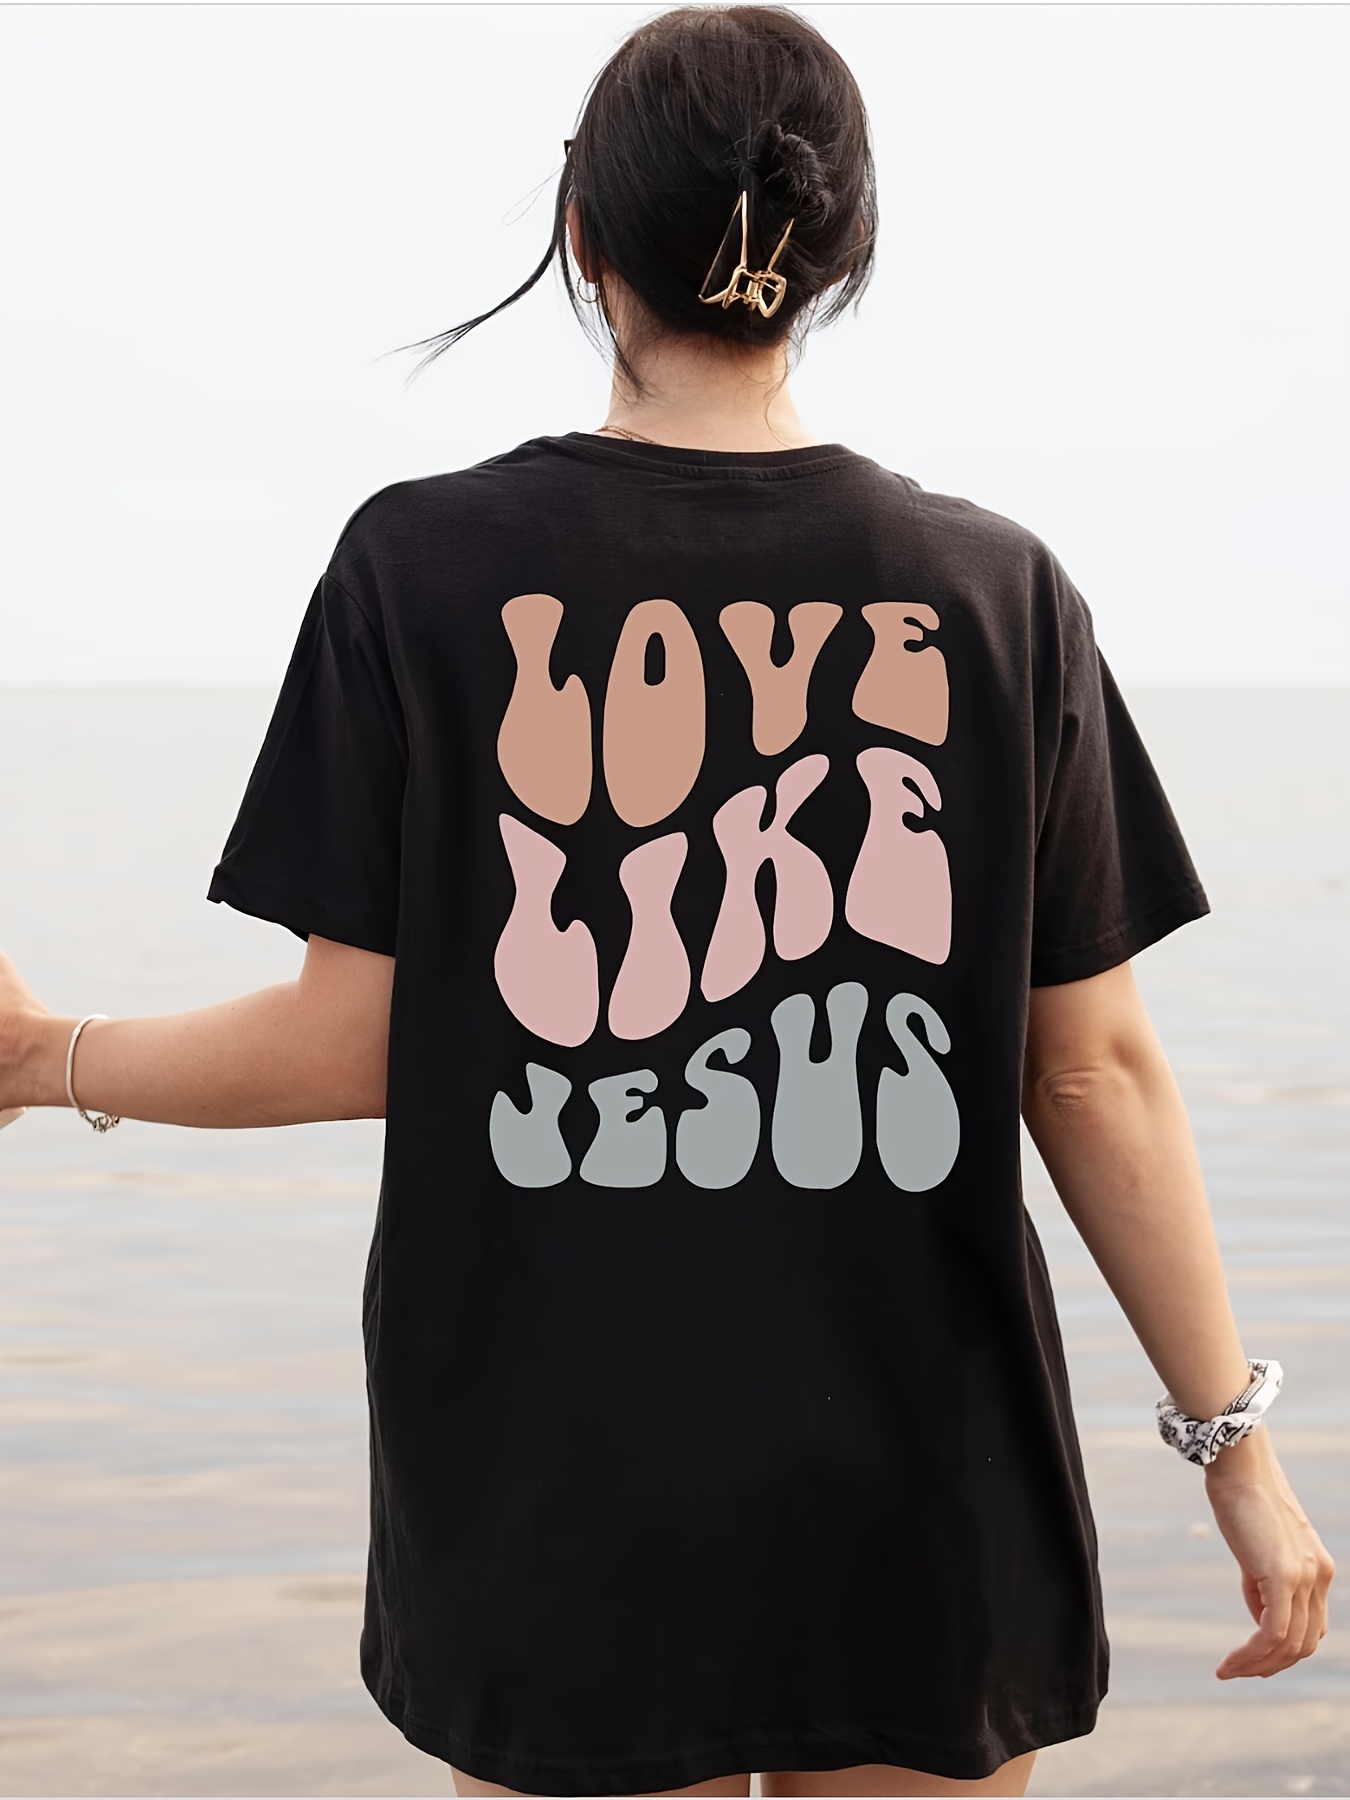 T-Shirts - Latvia - I Love Latvia